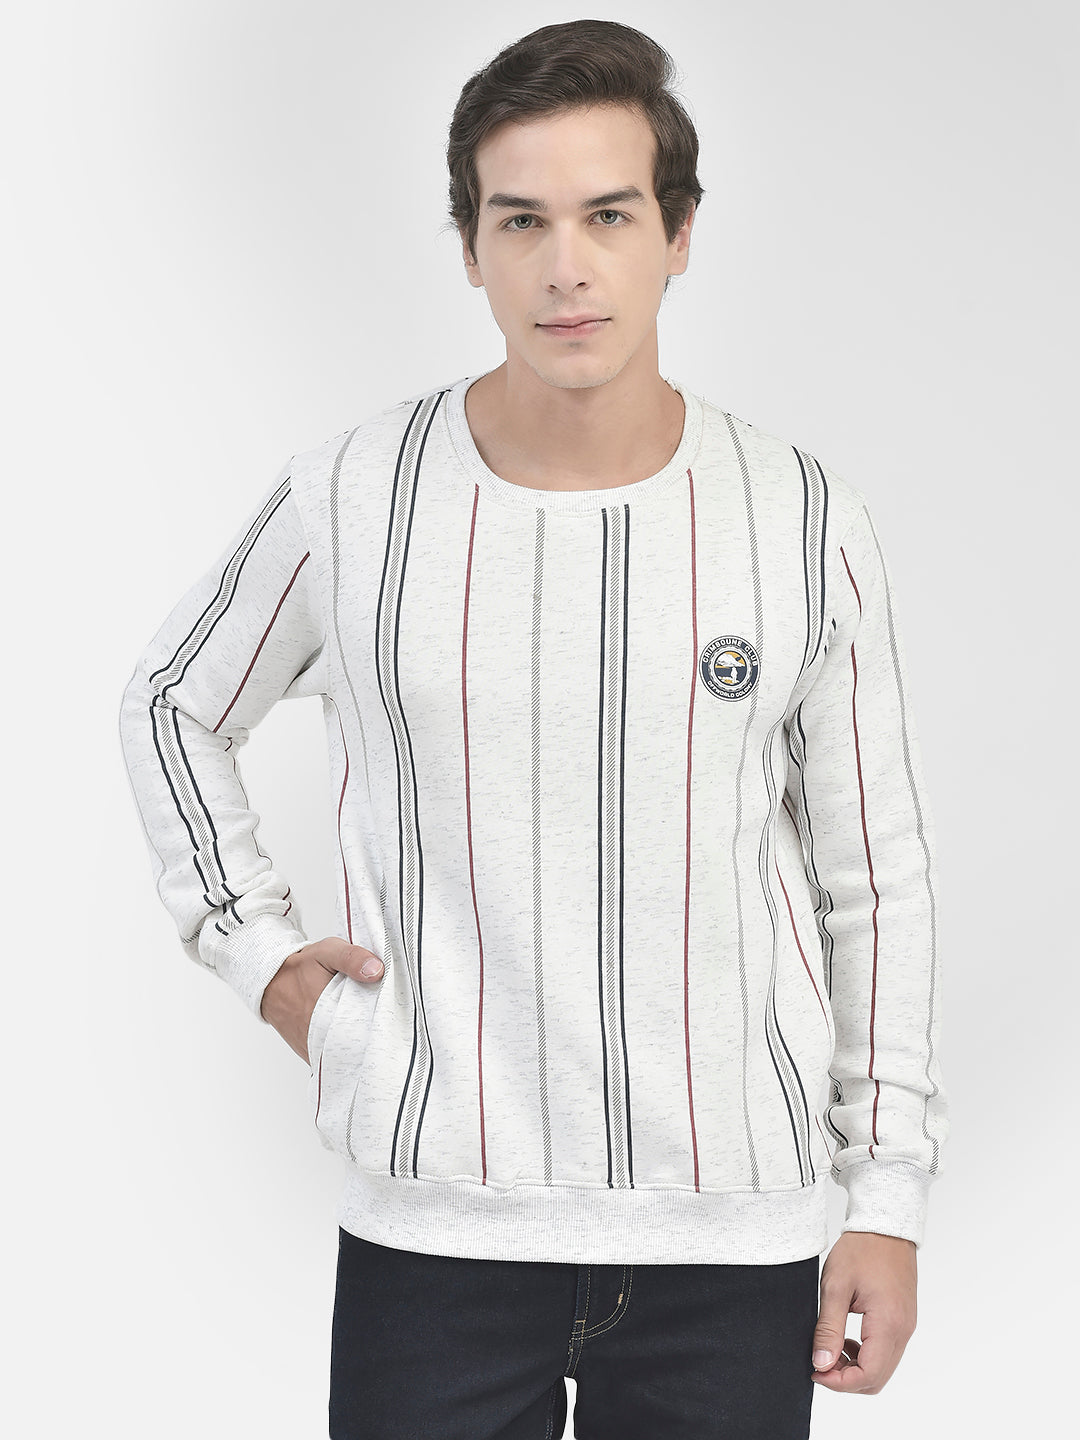 White Striped Round Neck Sweatshirt-Men Sweatshirts-Crimsoune Club